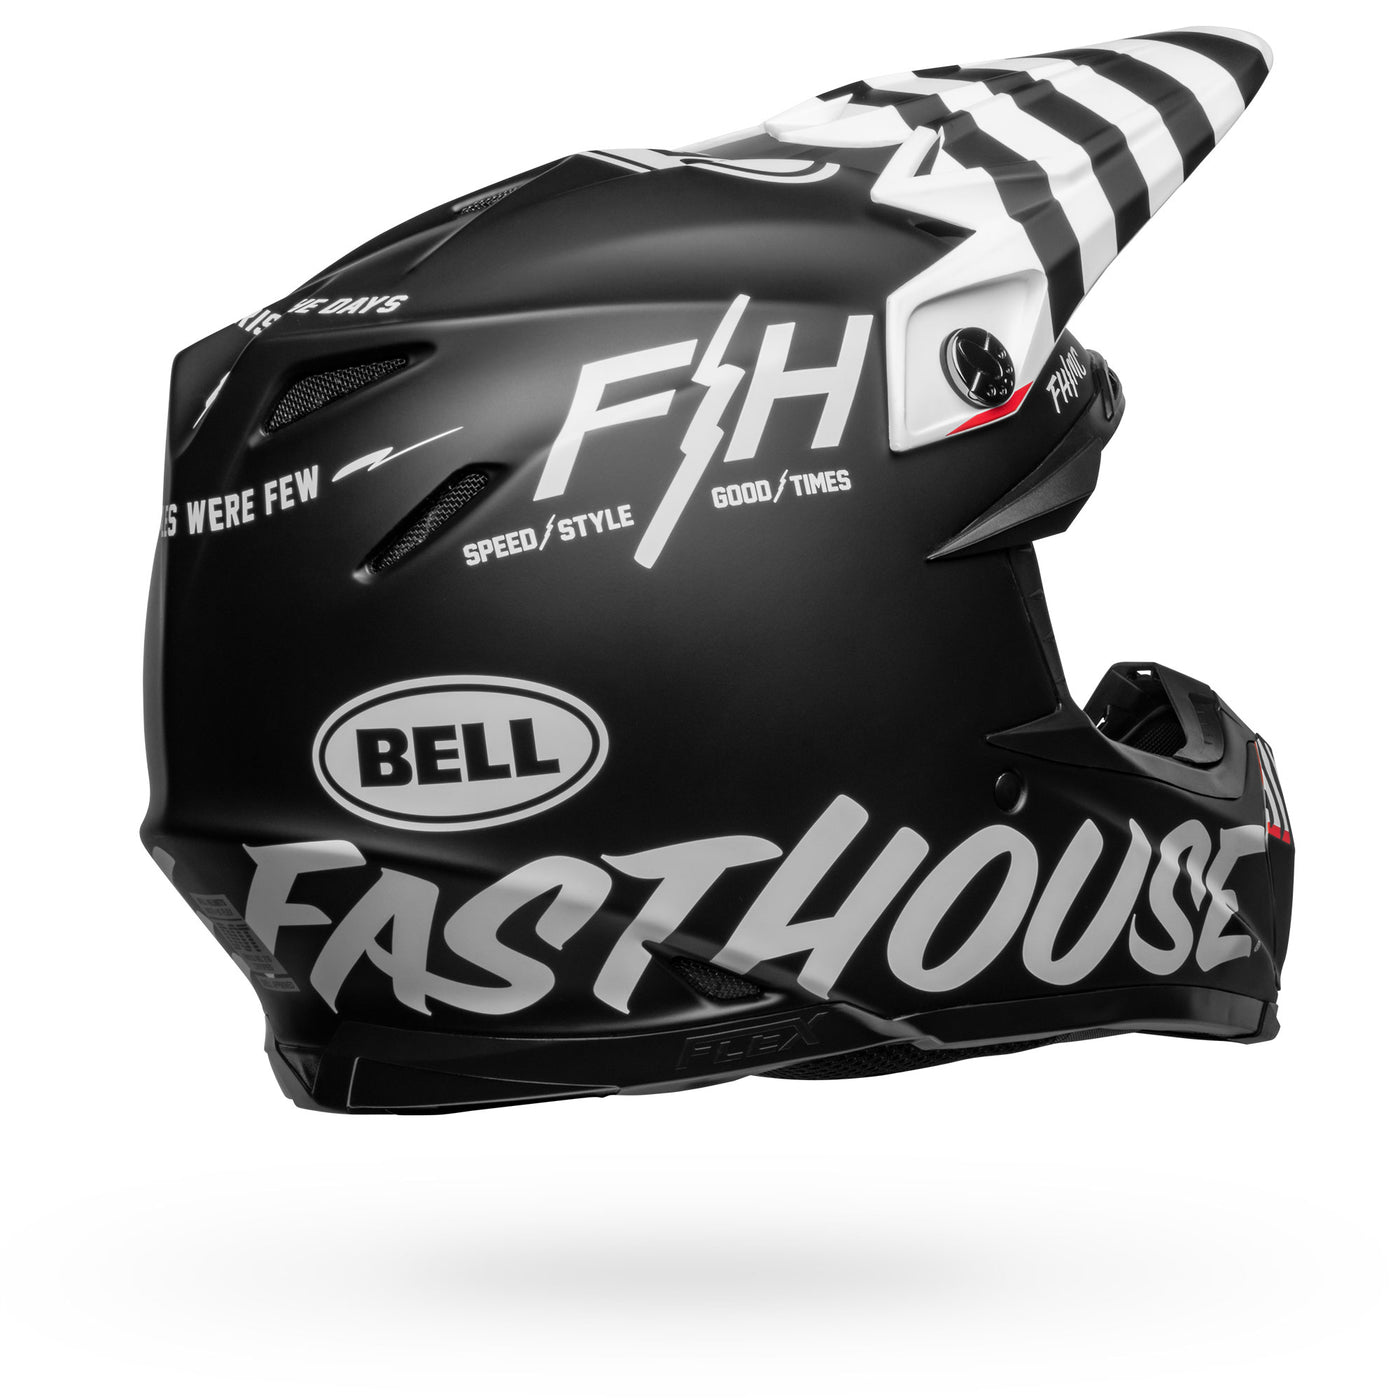 bell moto 9s flex dirt motorcycle helmet fasthouse flex crew matte black white back right